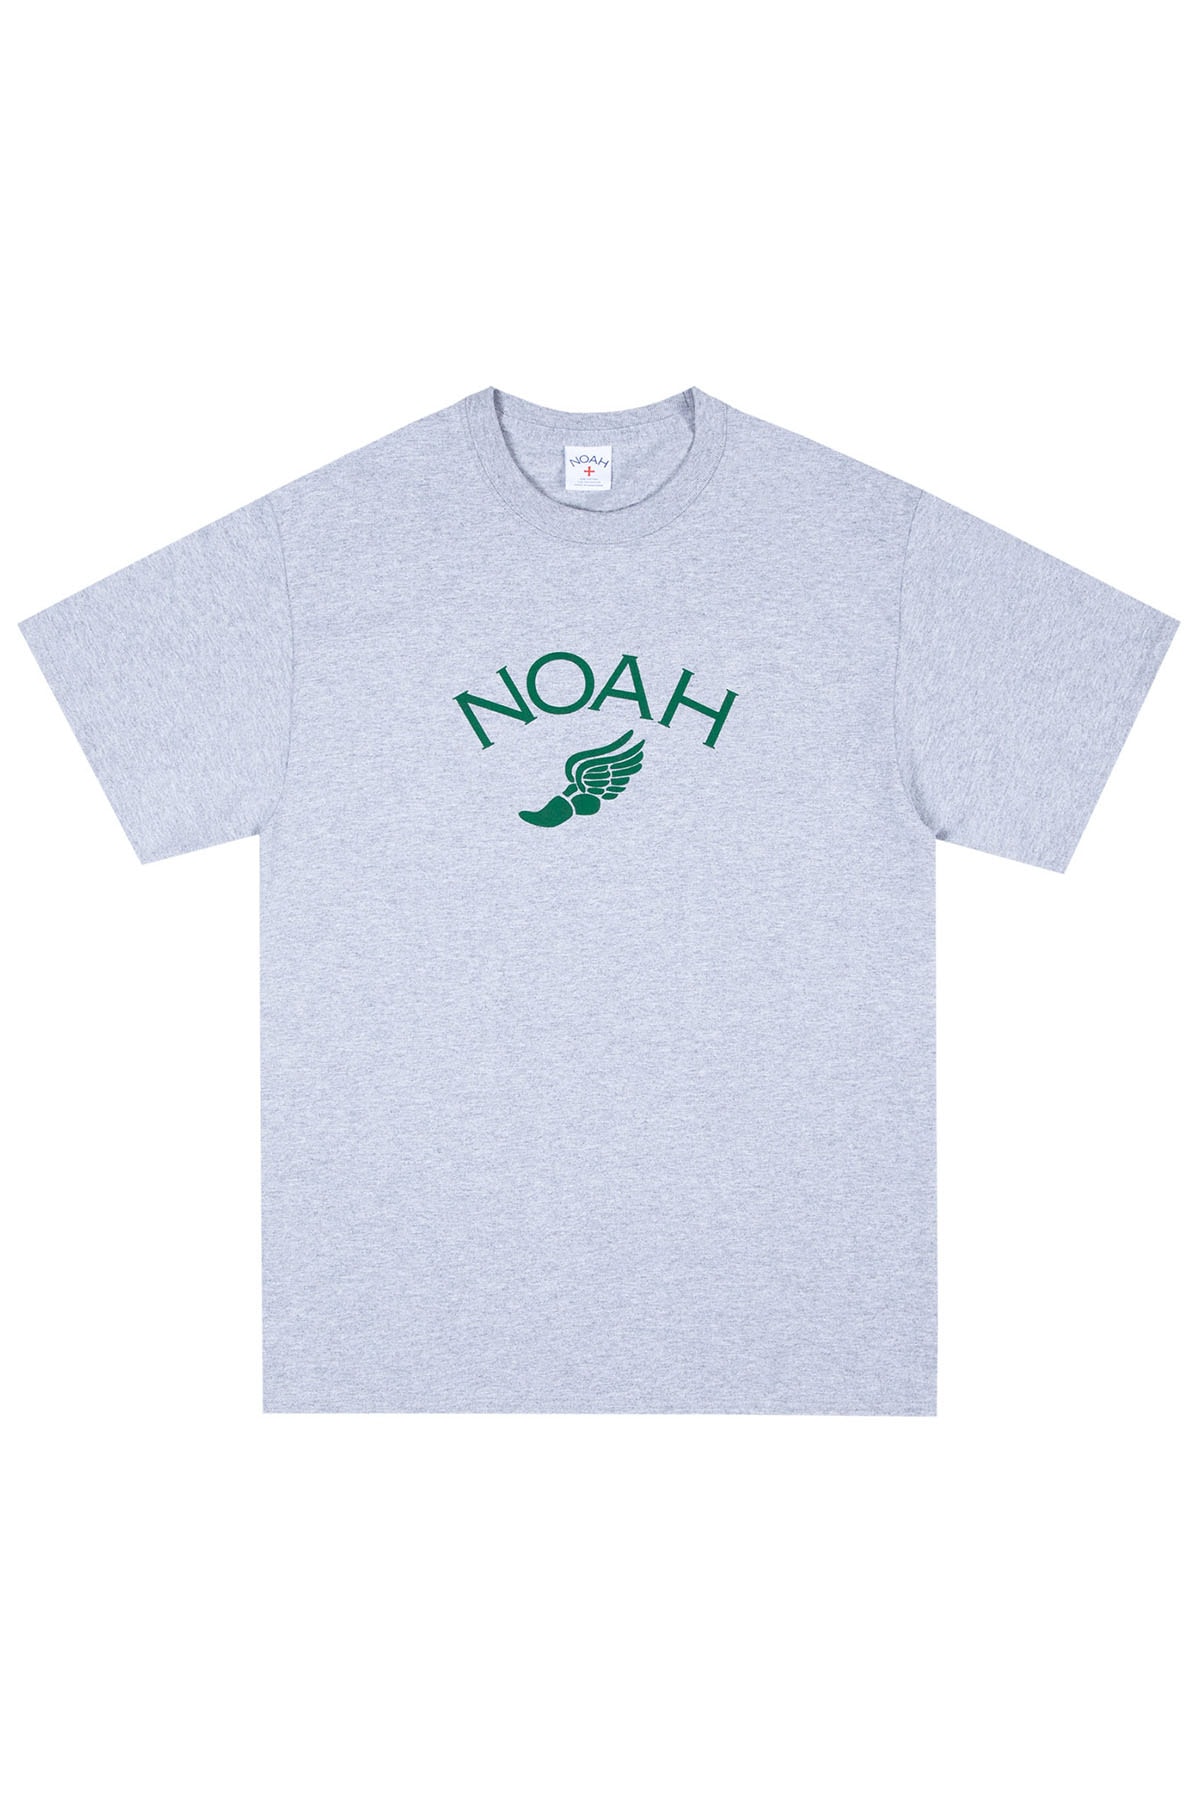 ノア NOAH が全てのアスリートに捧げる日本限定Tシャツをリリース